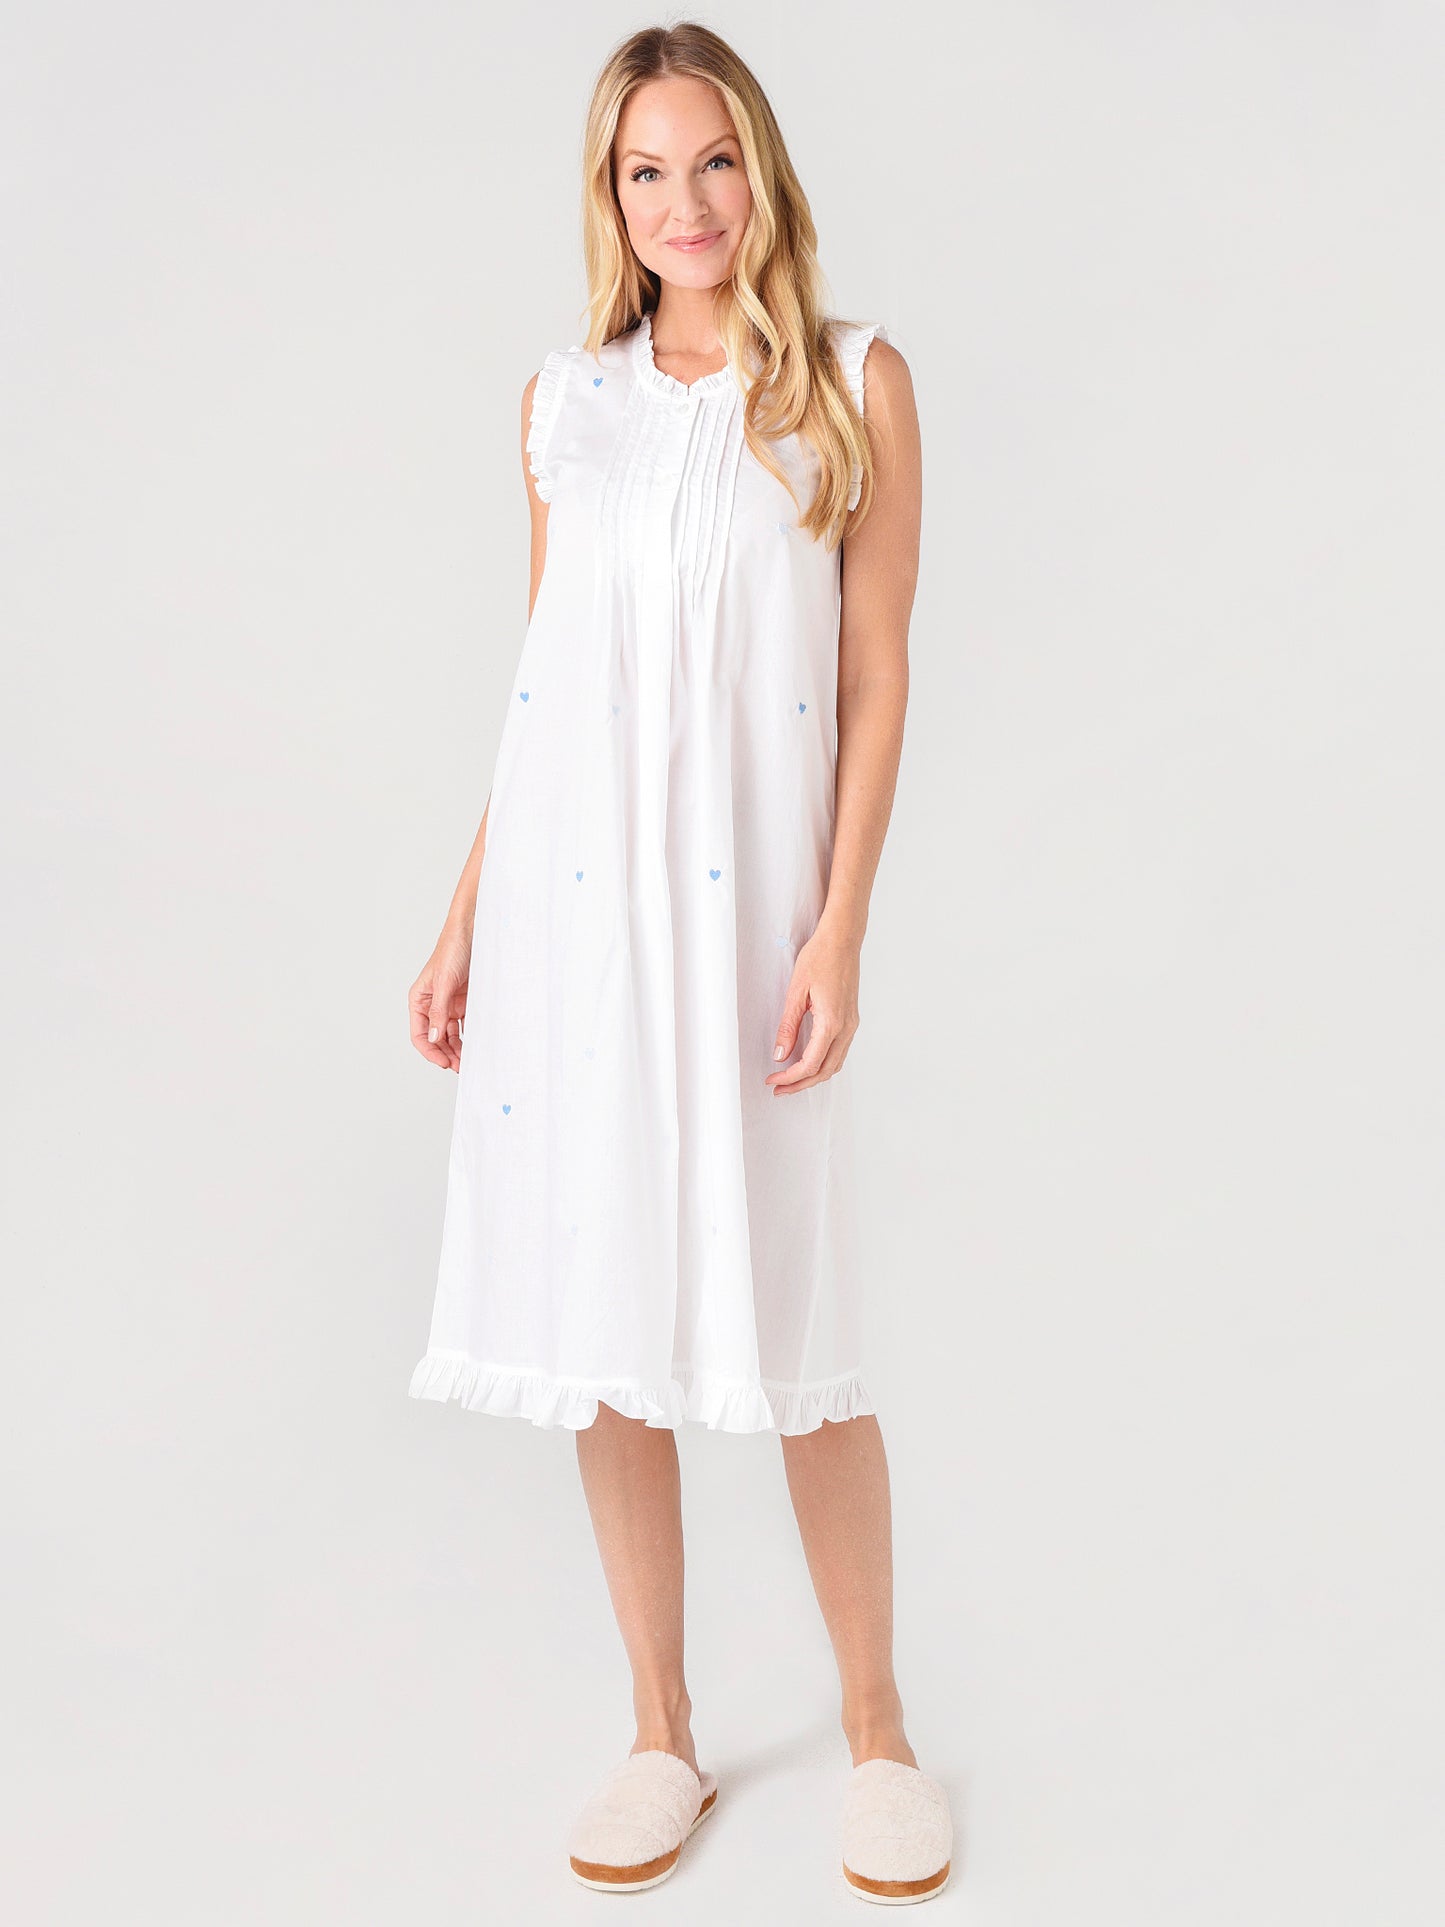 Lenora Women's Josie Ruffle Nightgown